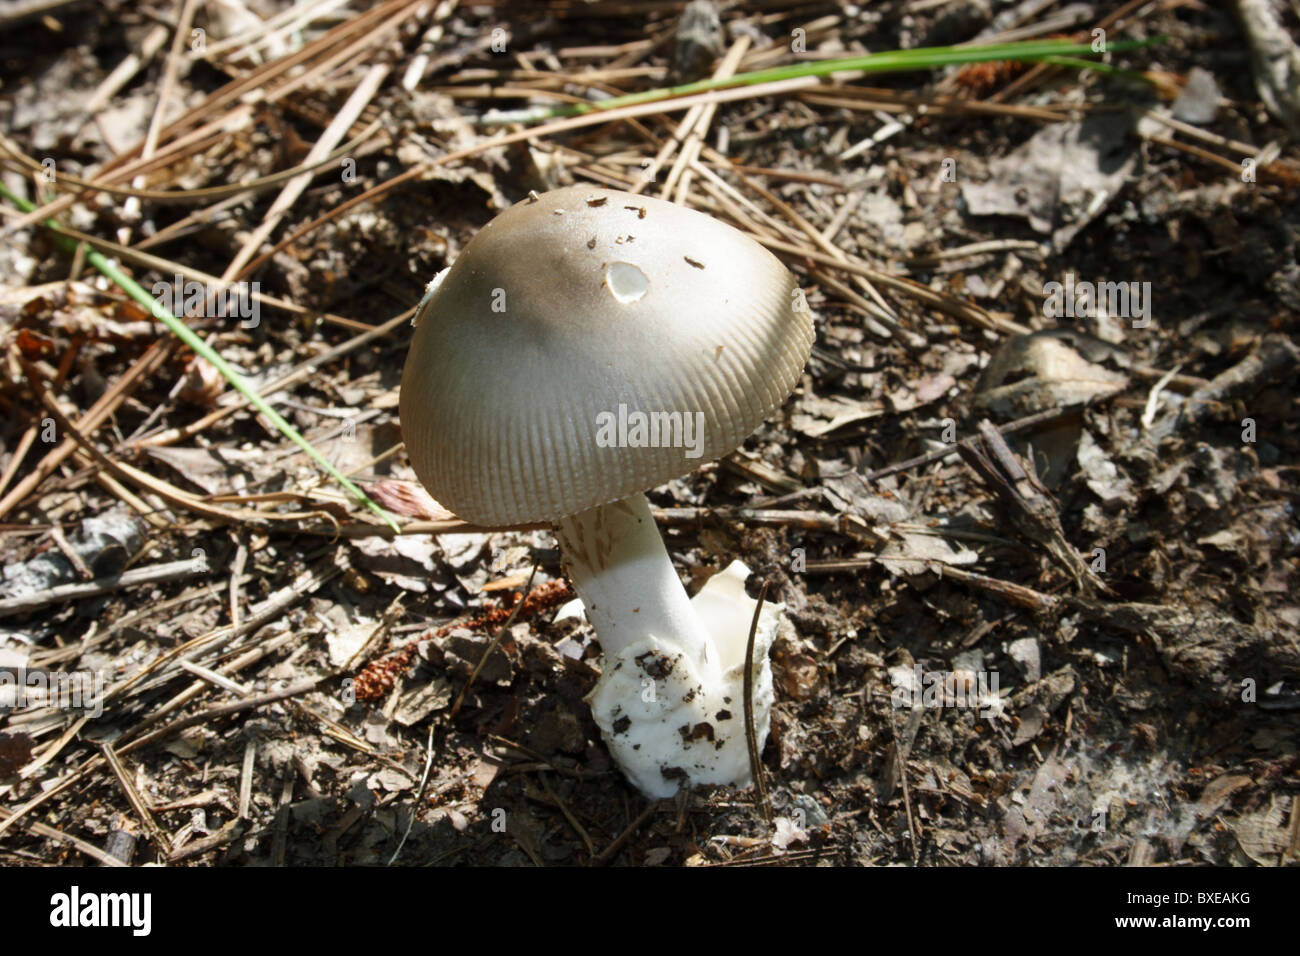 Amanita hongo que crece en bosques caducifolios. Midlothian, Virginia Foto de stock